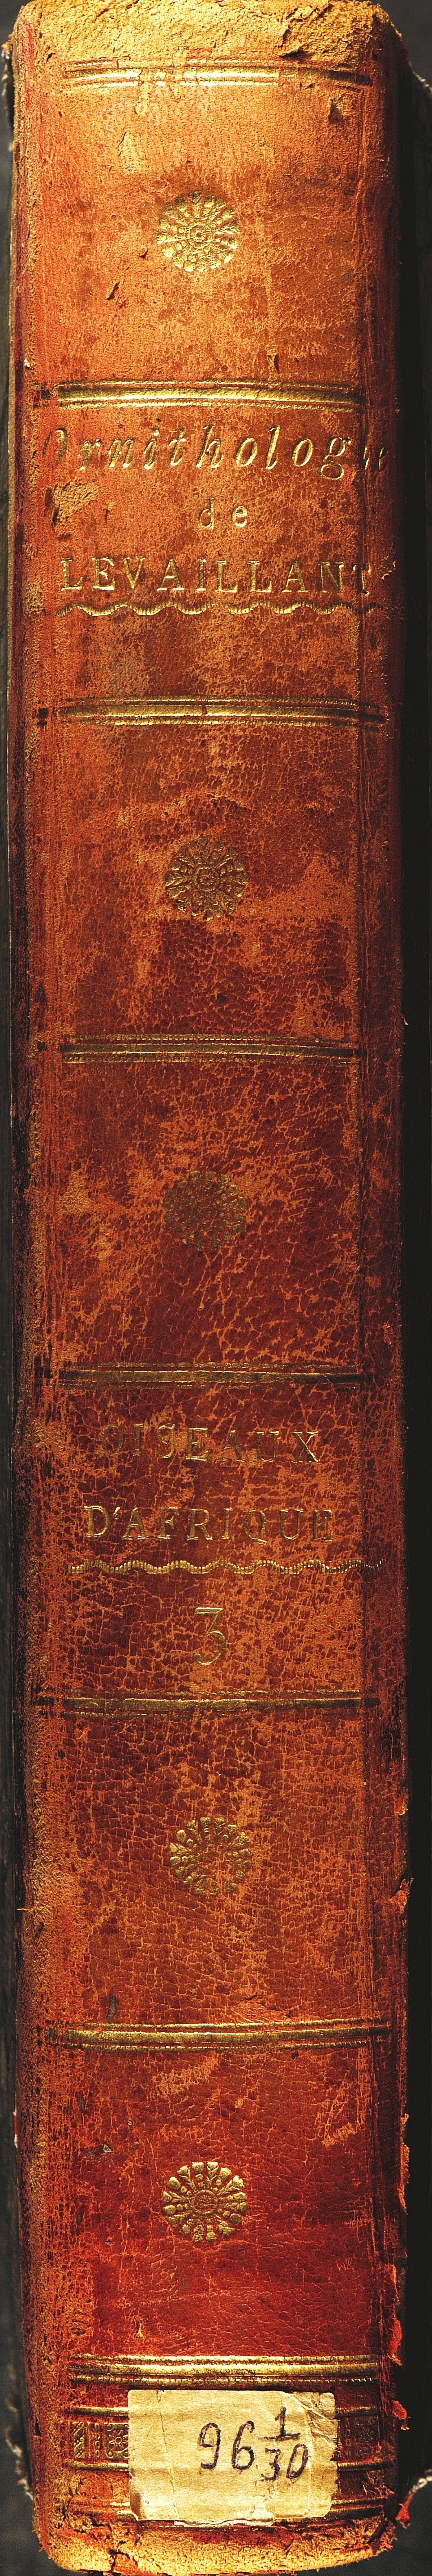 Histoire naturelle des oiseaux d’Afrique; par François Levaillant. T. III. - Paris, 1802